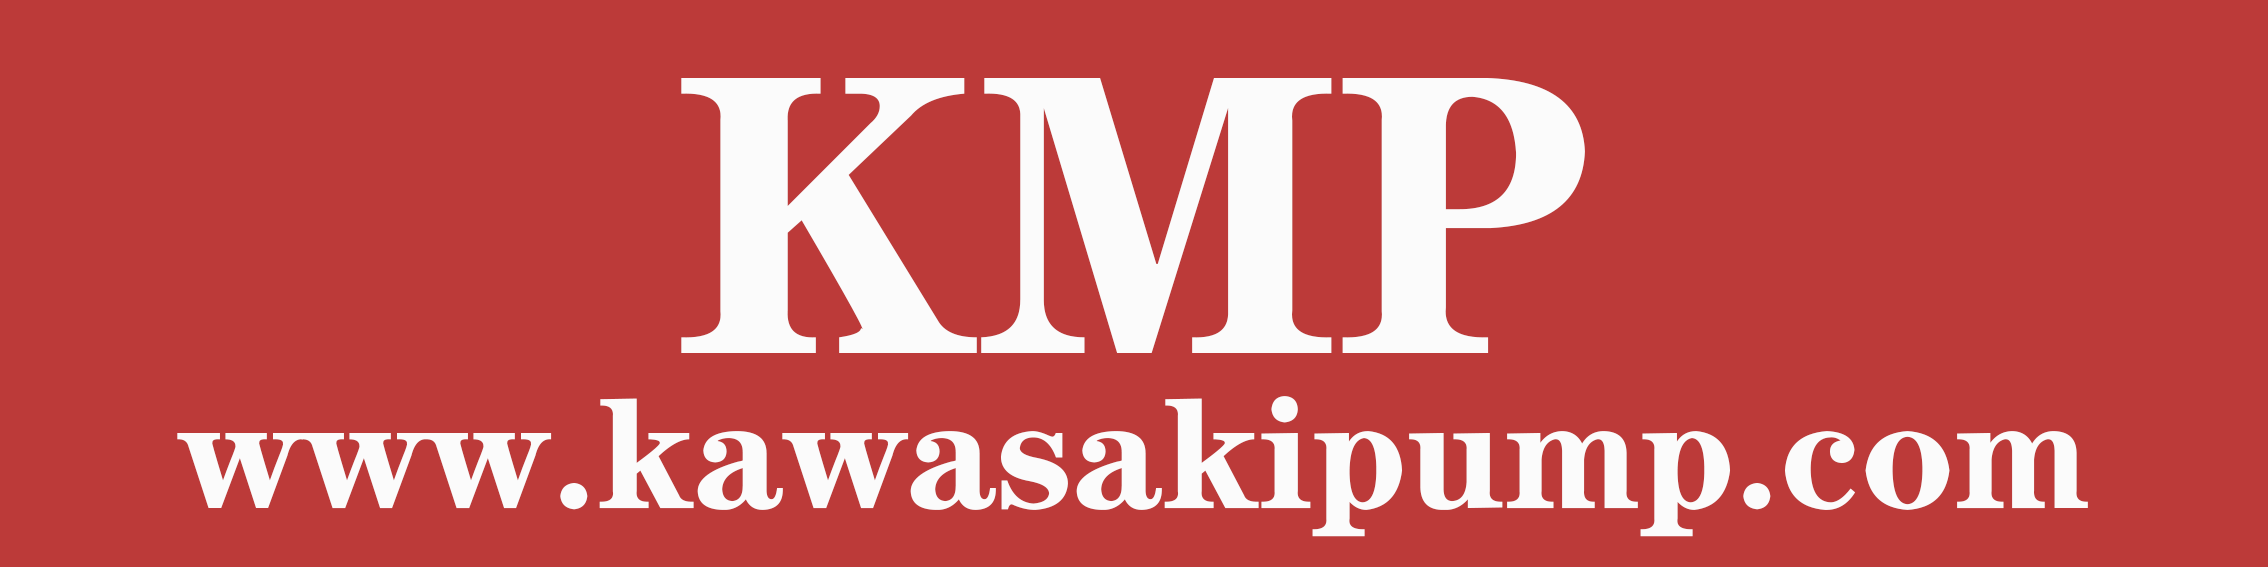 Kawasakipump.com